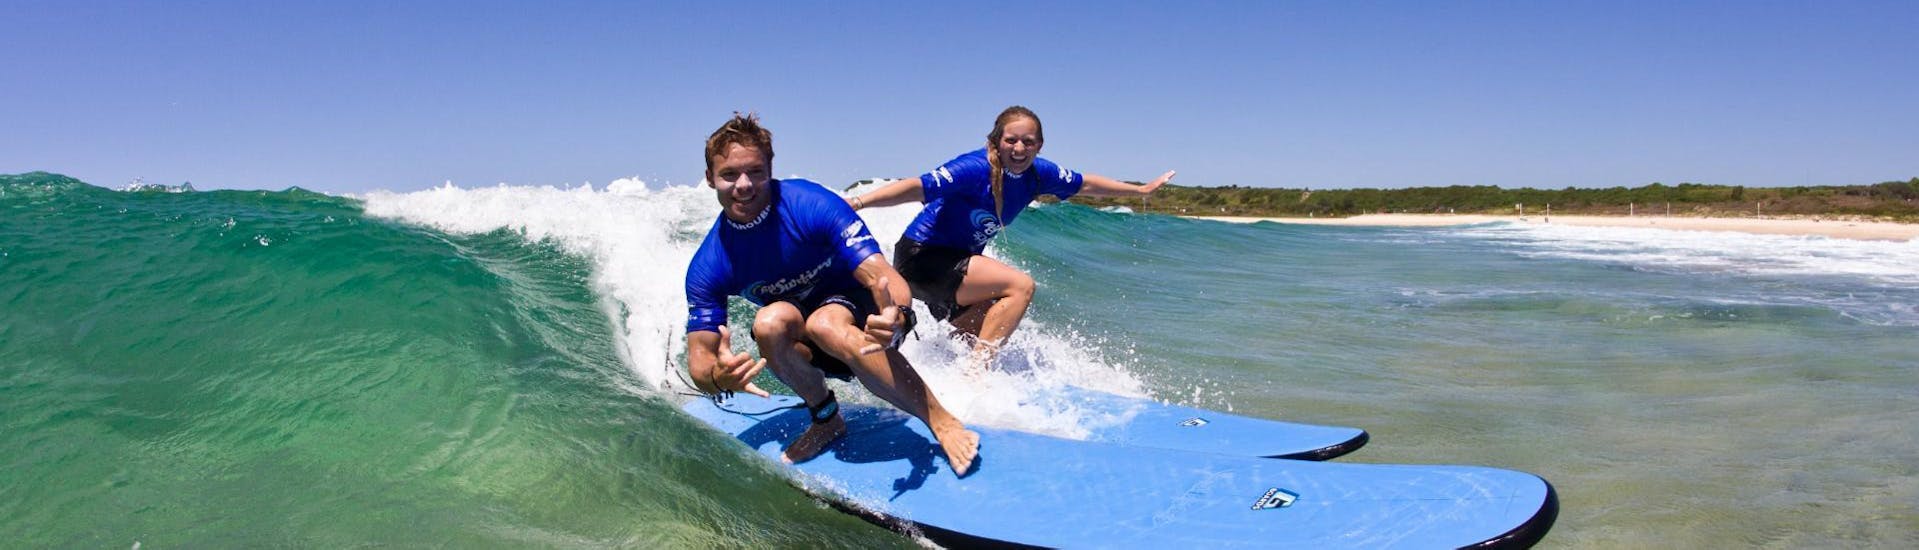 Surflessen in Maroubra vanaf 12 jaar voor beginners.